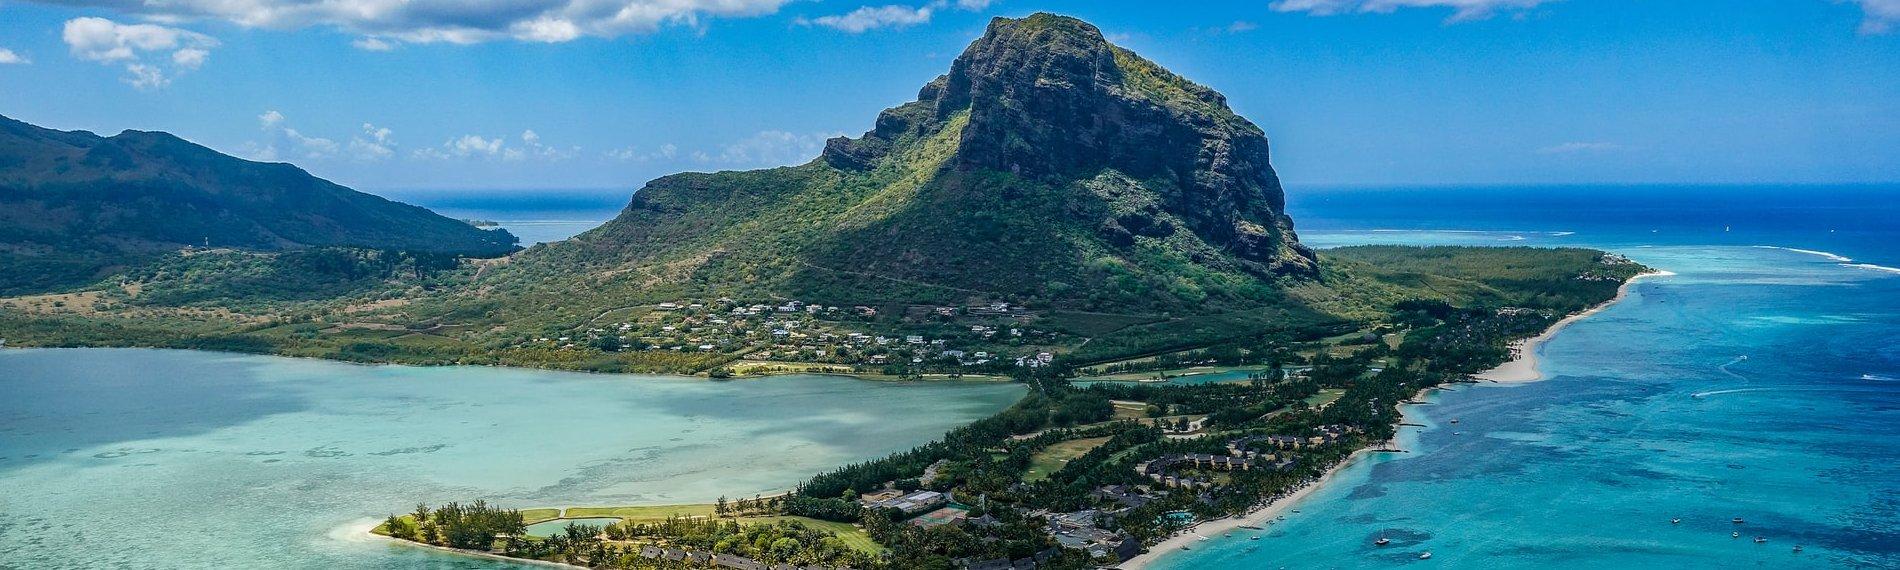 Vakantie Mauritius